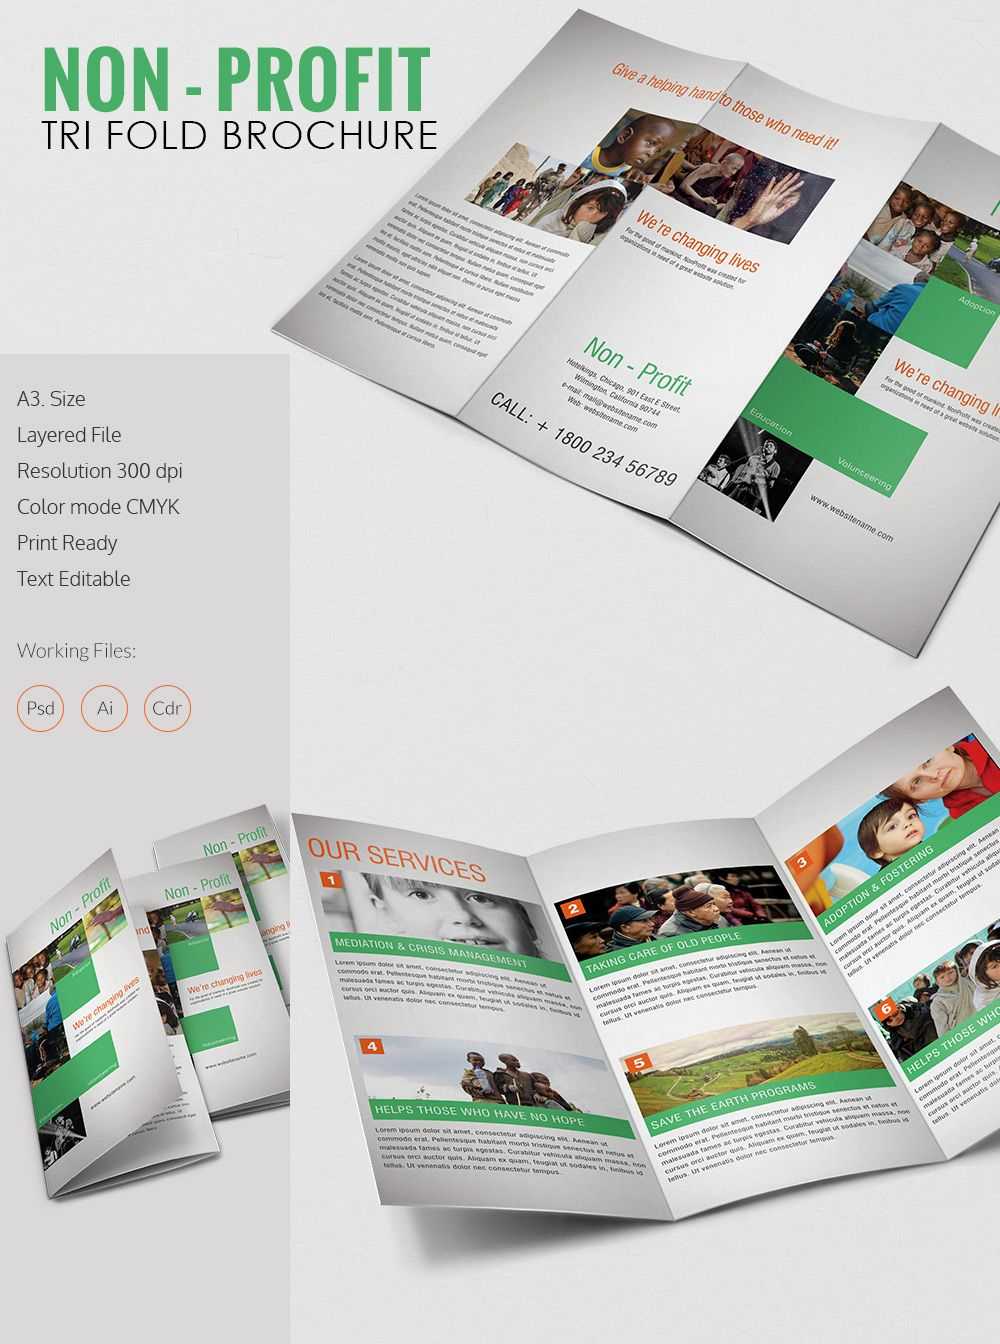 Tri Fold Brochure Template – 43+ Free Word, Pdf, Psd, Eps Throughout 3 Fold Brochure Template Psd Free Download